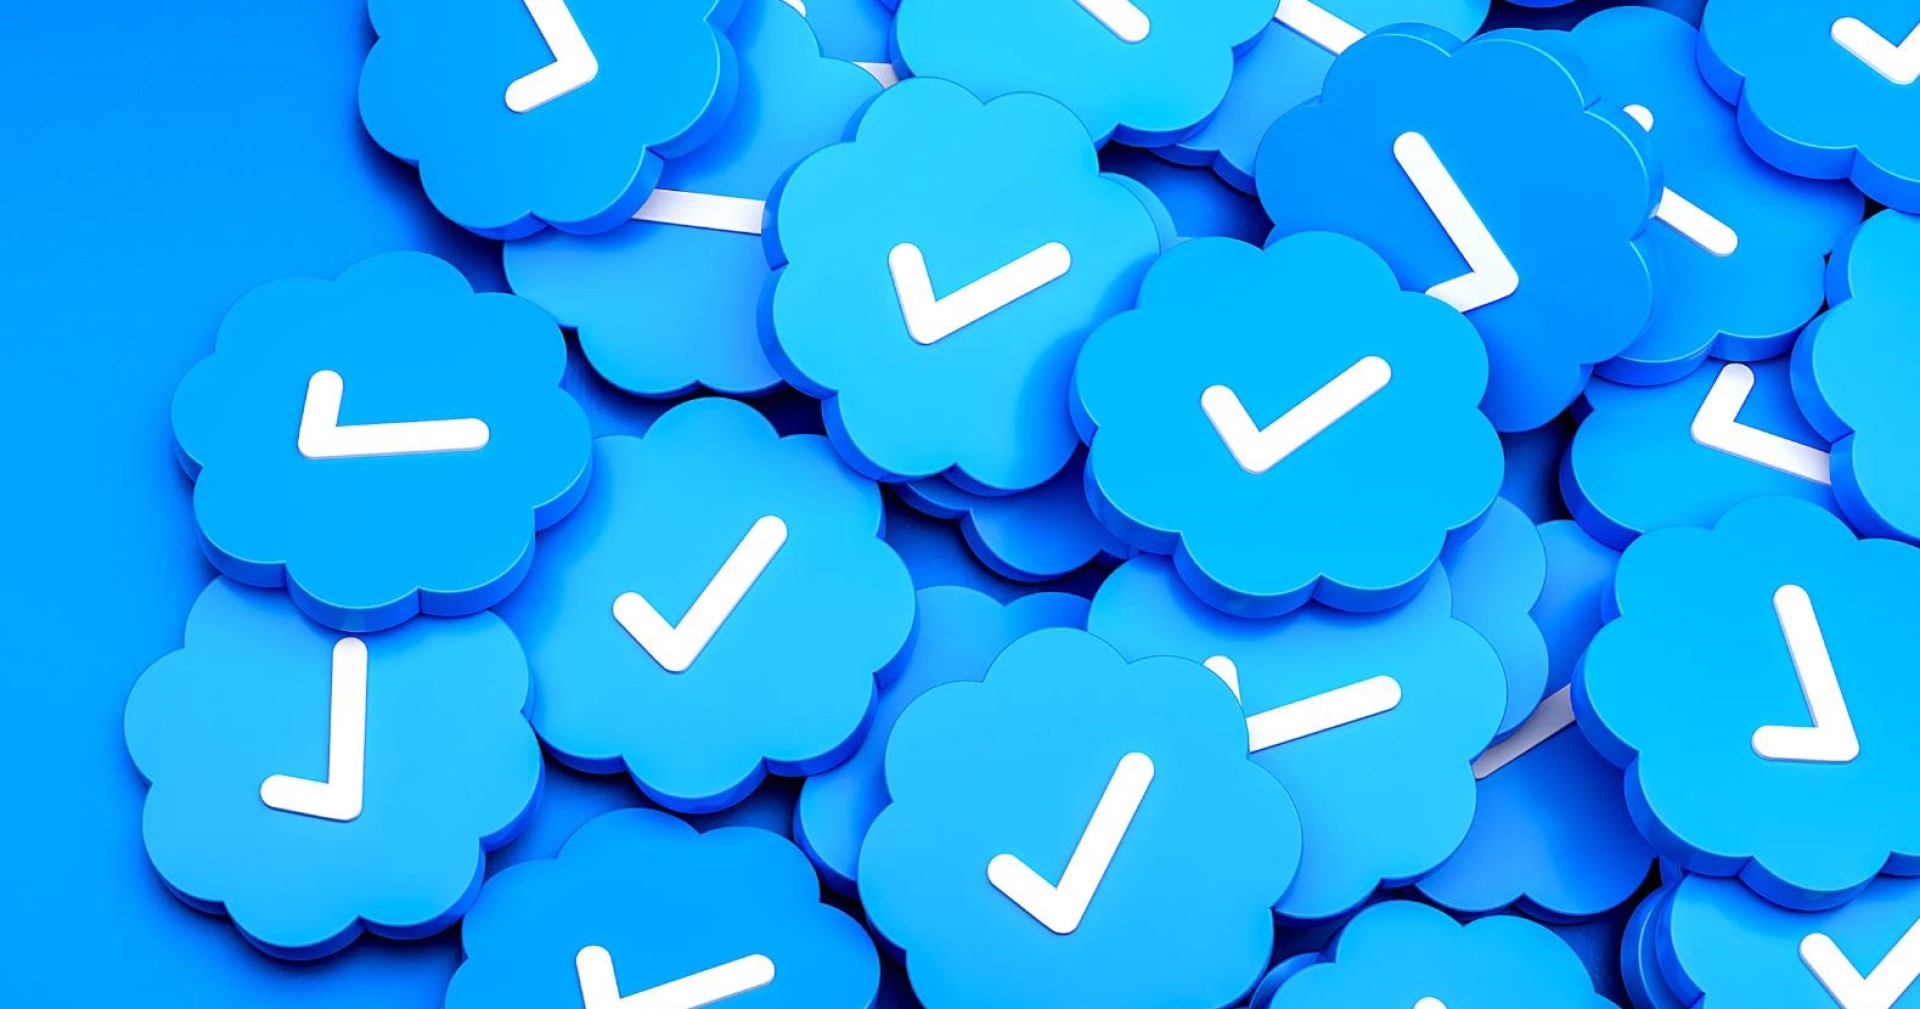 หน่วยกำกับความเป็นส่วนตัวยุโรปชี้ Twitter ให้บริการ Twitter Blue ในยุโรปโดยไม่ปรึกษา